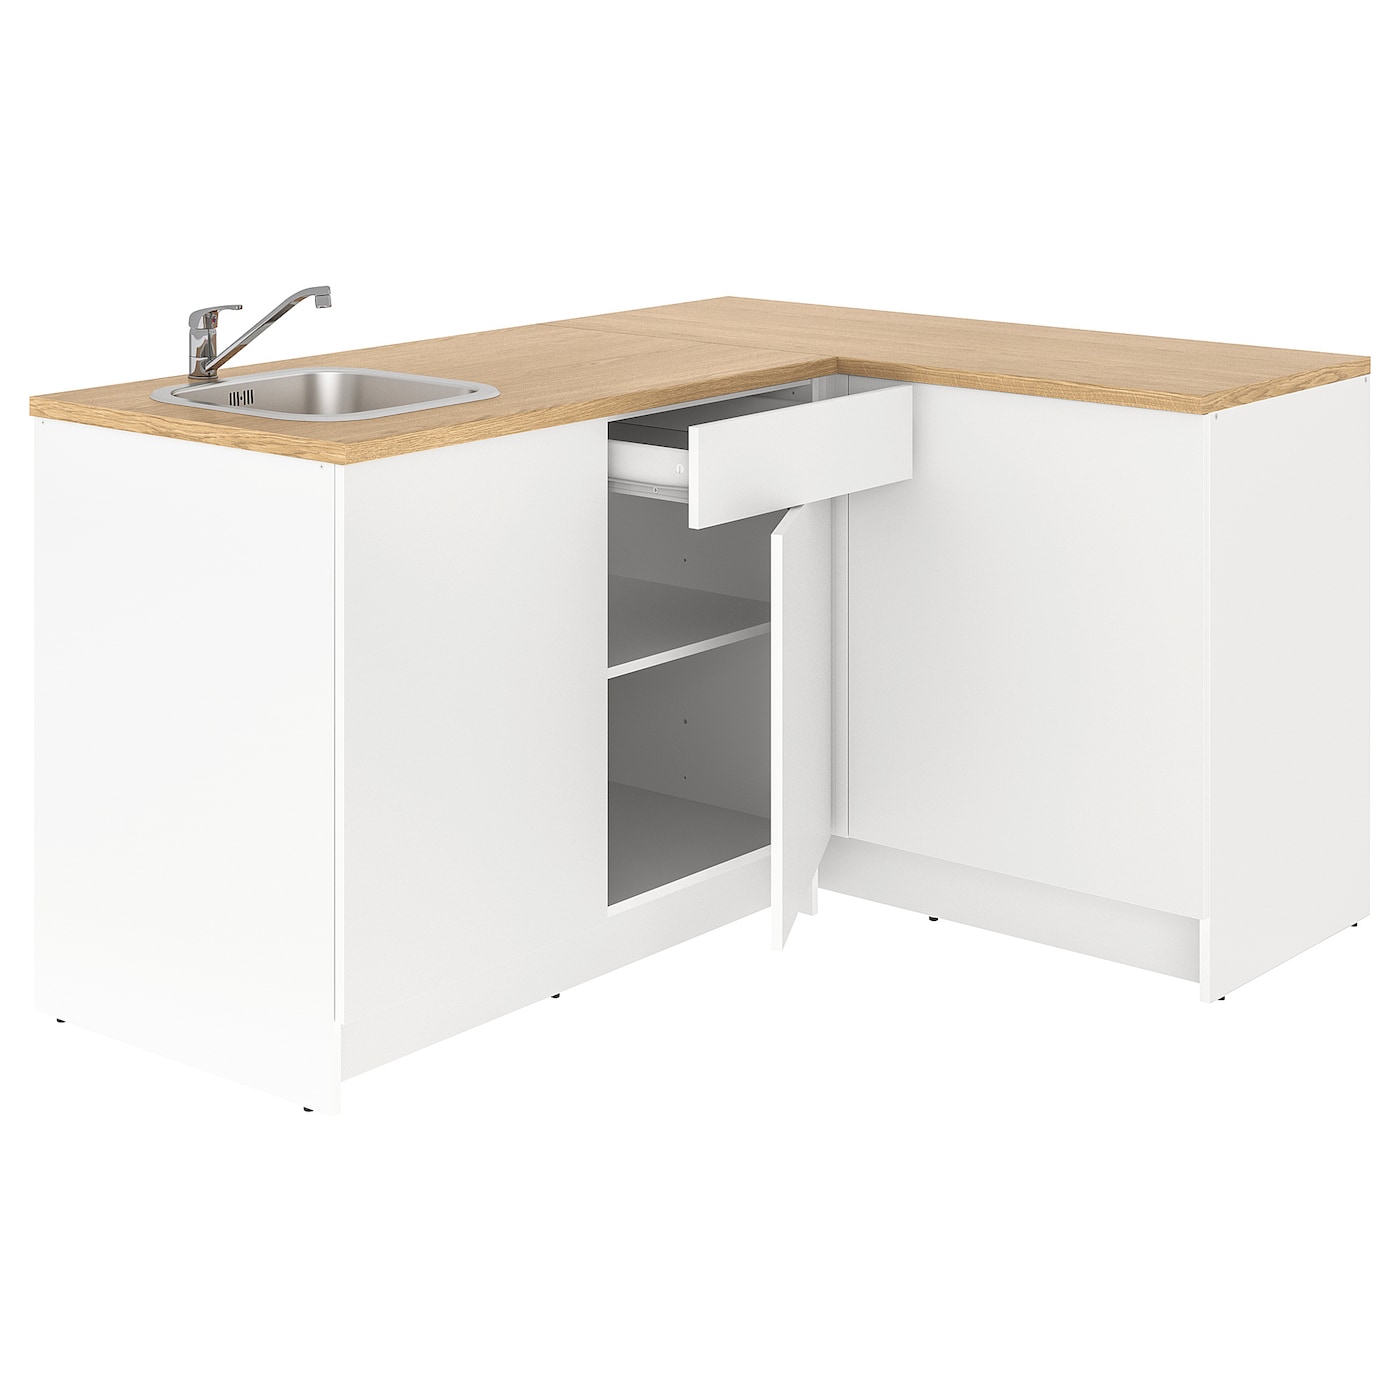 Комбинация кухонная угловая - KNOXHULT IKEA/ КНОКСХУЛЬТ ИКЕА, 183x122x91 см, белый/бежевый